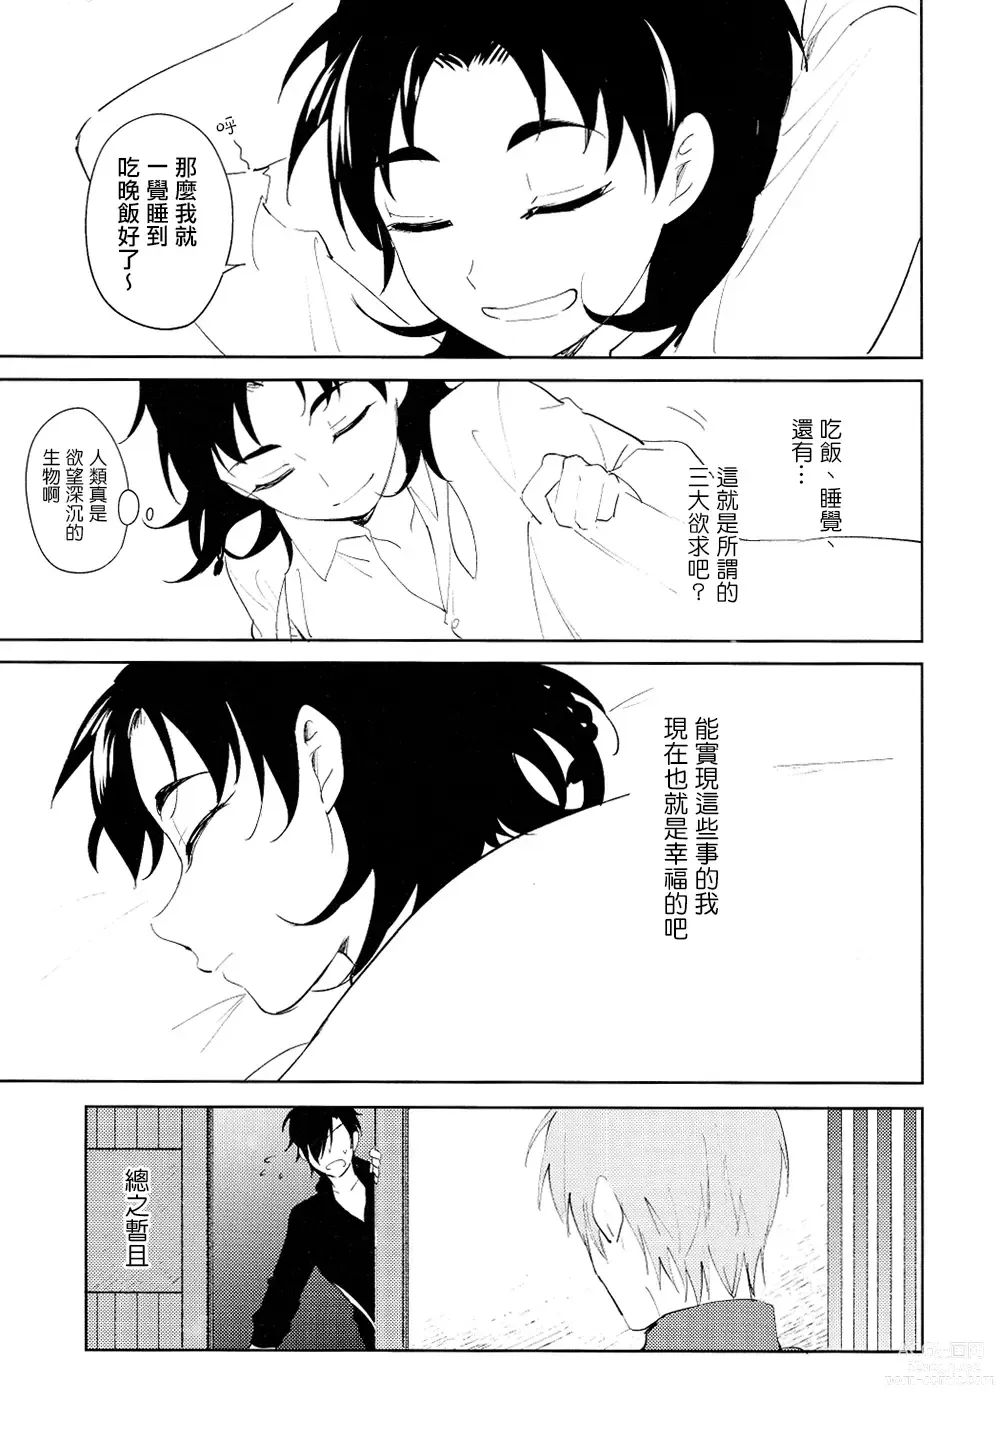 Page 26 of doujinshi 从一个人变成两个人